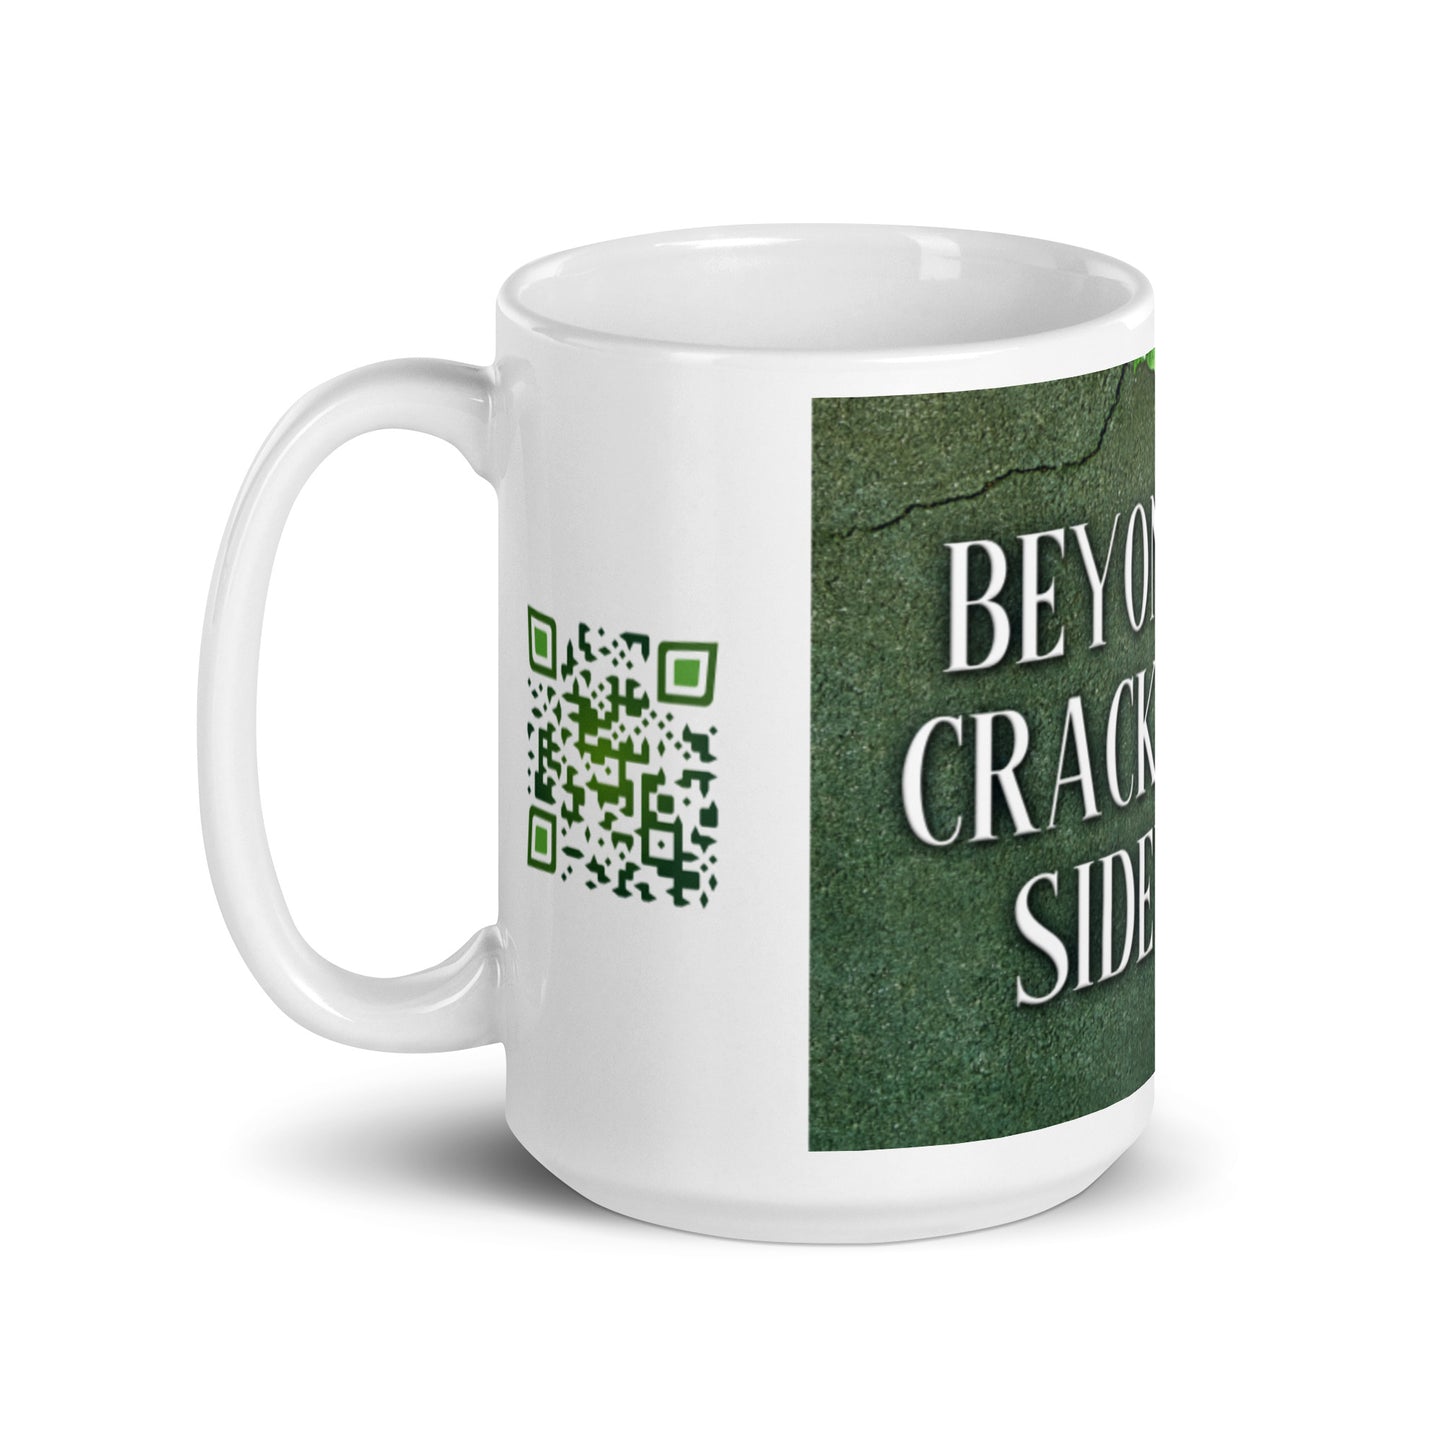 Beyond The Crack In The Sidewalk - White Coffee Mug